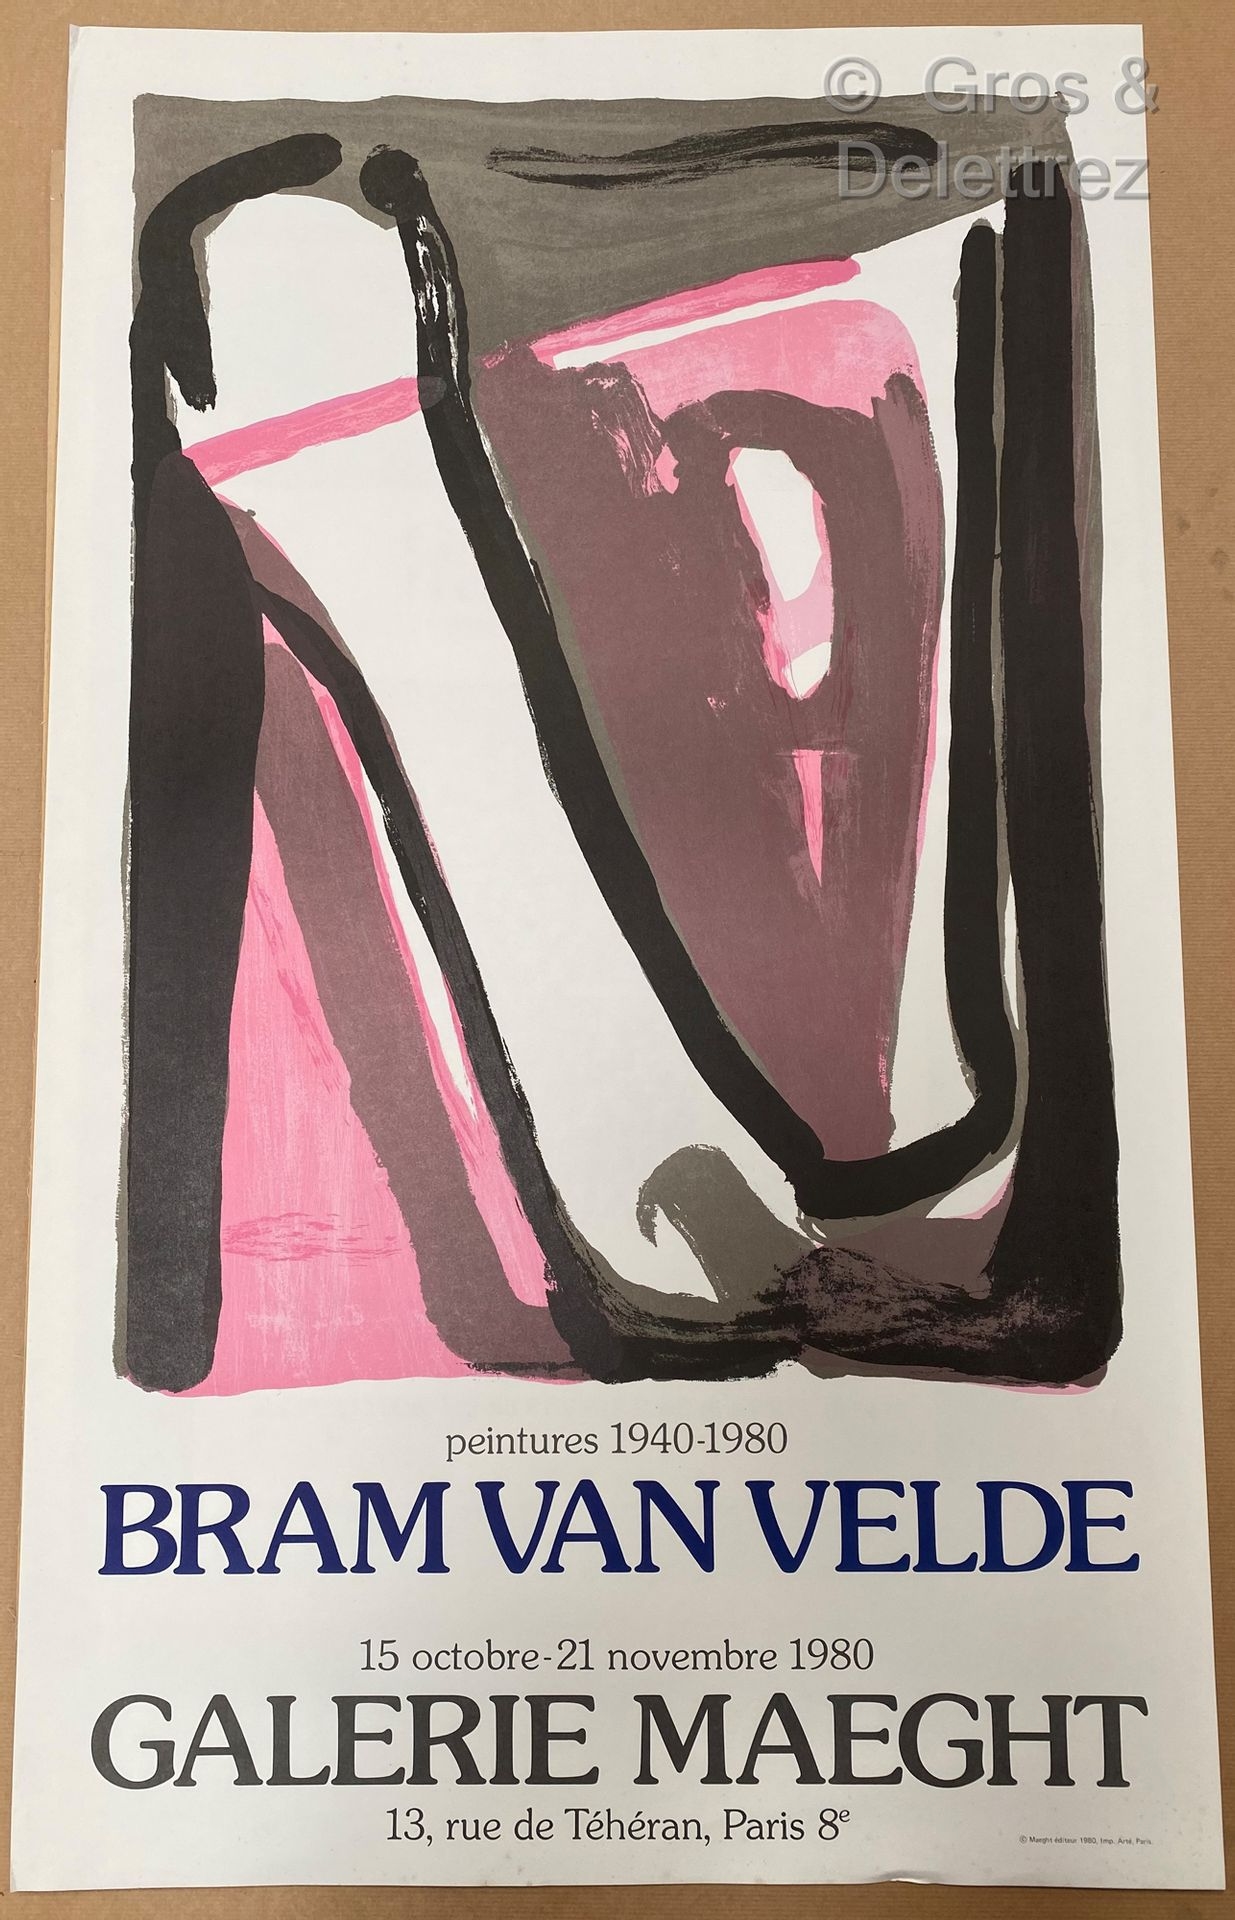 Bram Van Velde | Two from Galerie Maeght (1980) |